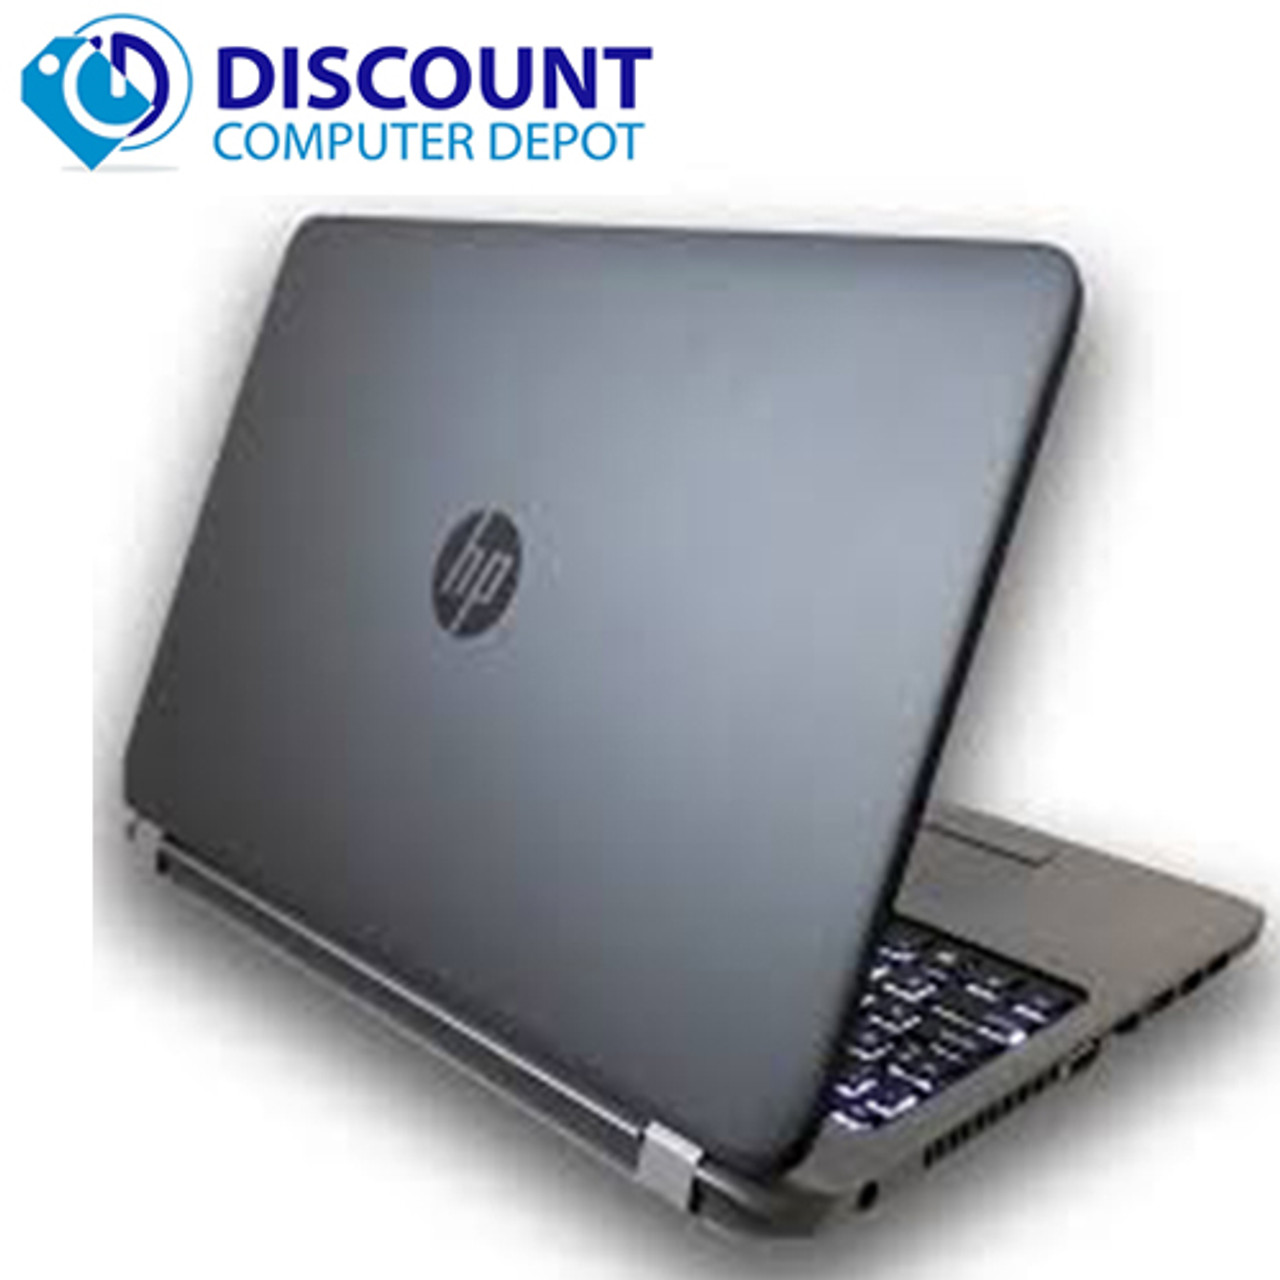 【定番の15.6インチ】 【スタイリッシュノート】 HP ProBook 450 G1 Notebook PC 第4世代 Core i7 4600M 8GB 新品SSD960GB スーパーマルチ Windows10 64bit WPSOffice 15.6インチ 無線LAN パソコン ノートパソコン PC Notebook